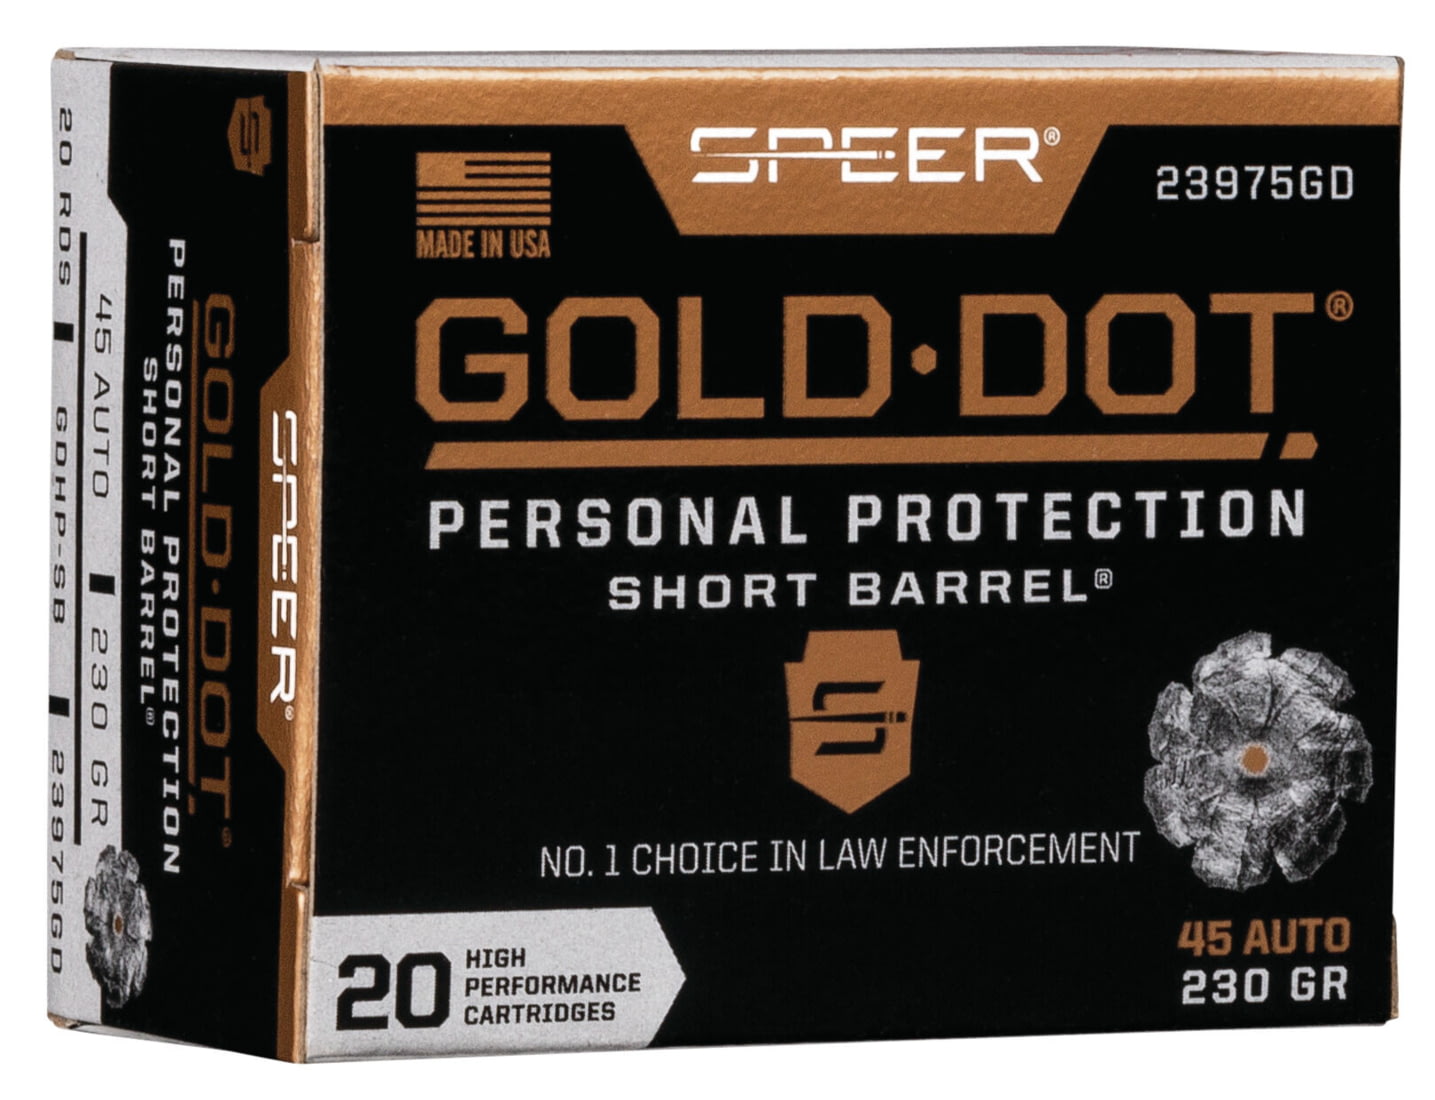 Speer Gold Dot .45 ACP 230 grain Gold Dot Hollow Point Short Barrel Centerfire Pistol Ammunition